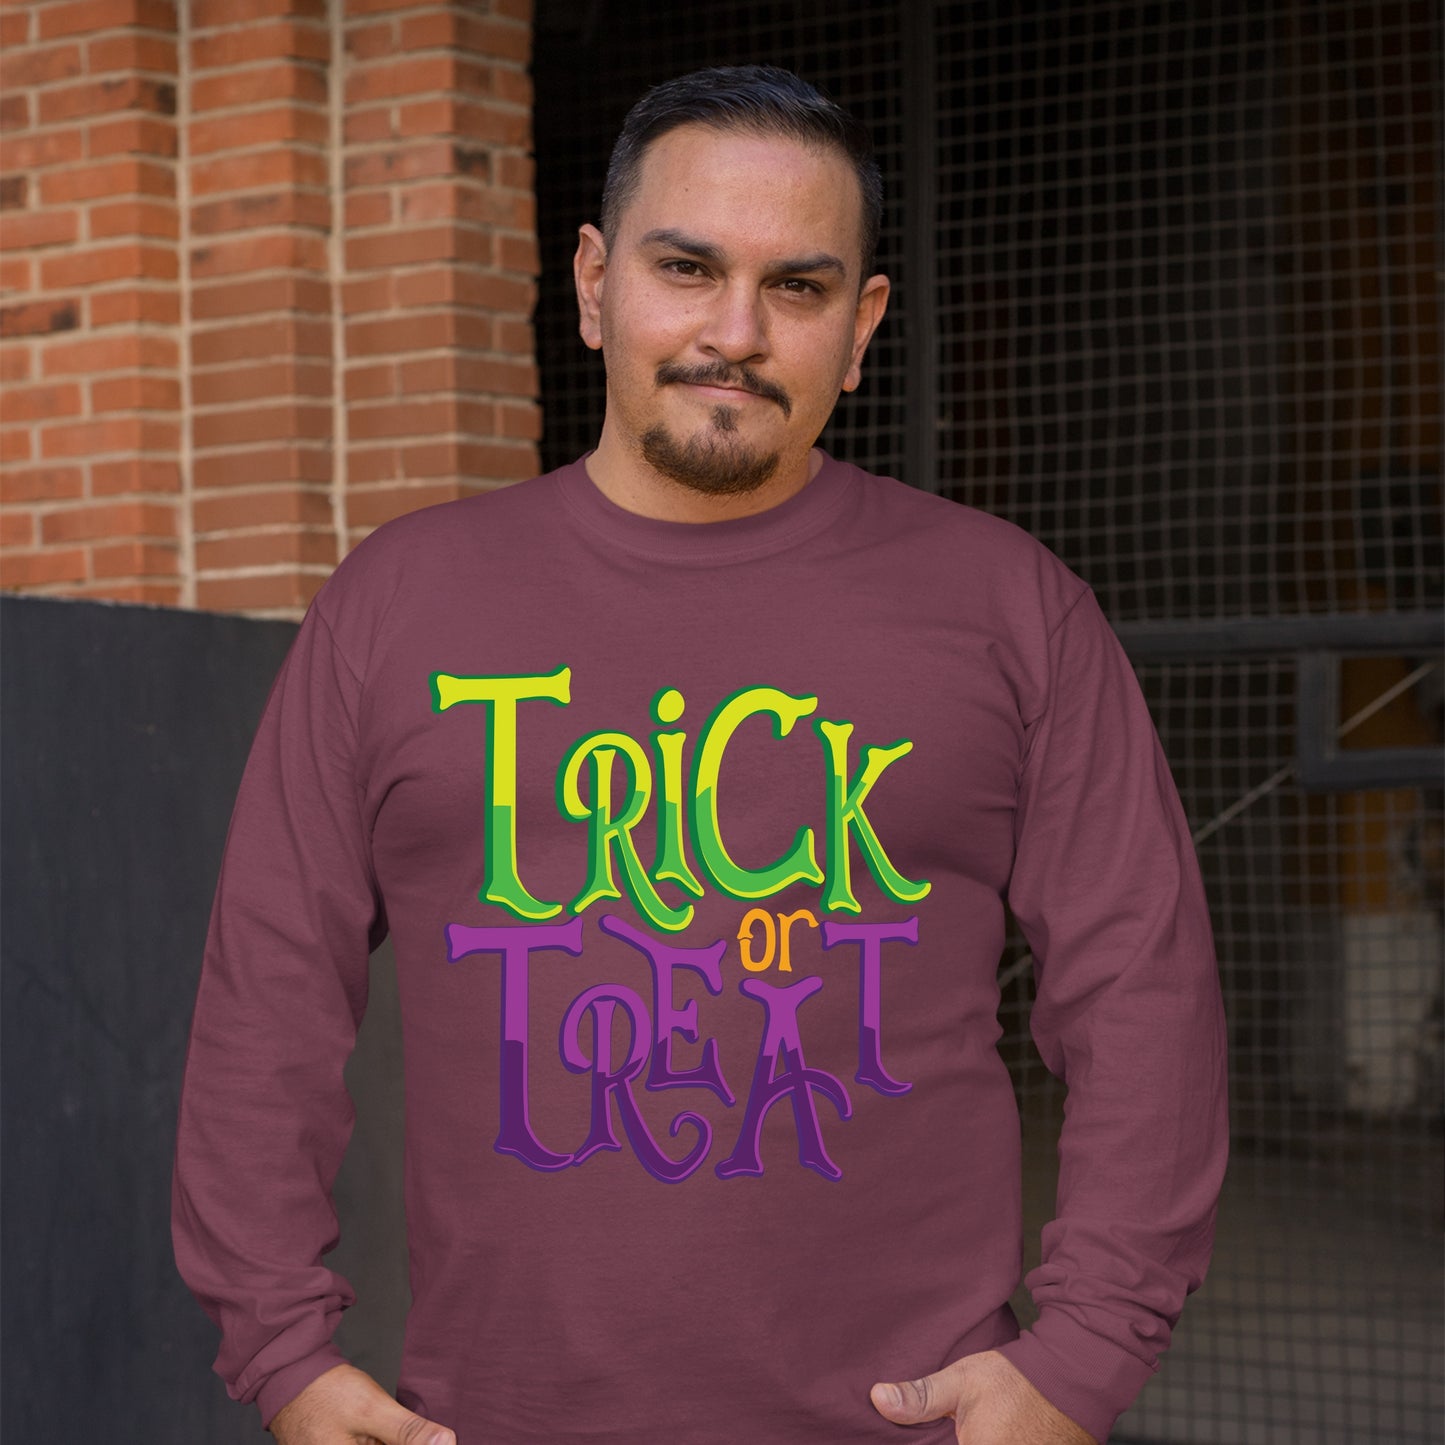 Halloween Trick or Treat Sweatshirt, Halloween Gift Sweatshirt, Halloween Sweater, Cute Halloween Sweatshirt, Funny Halloween Sweatshirt